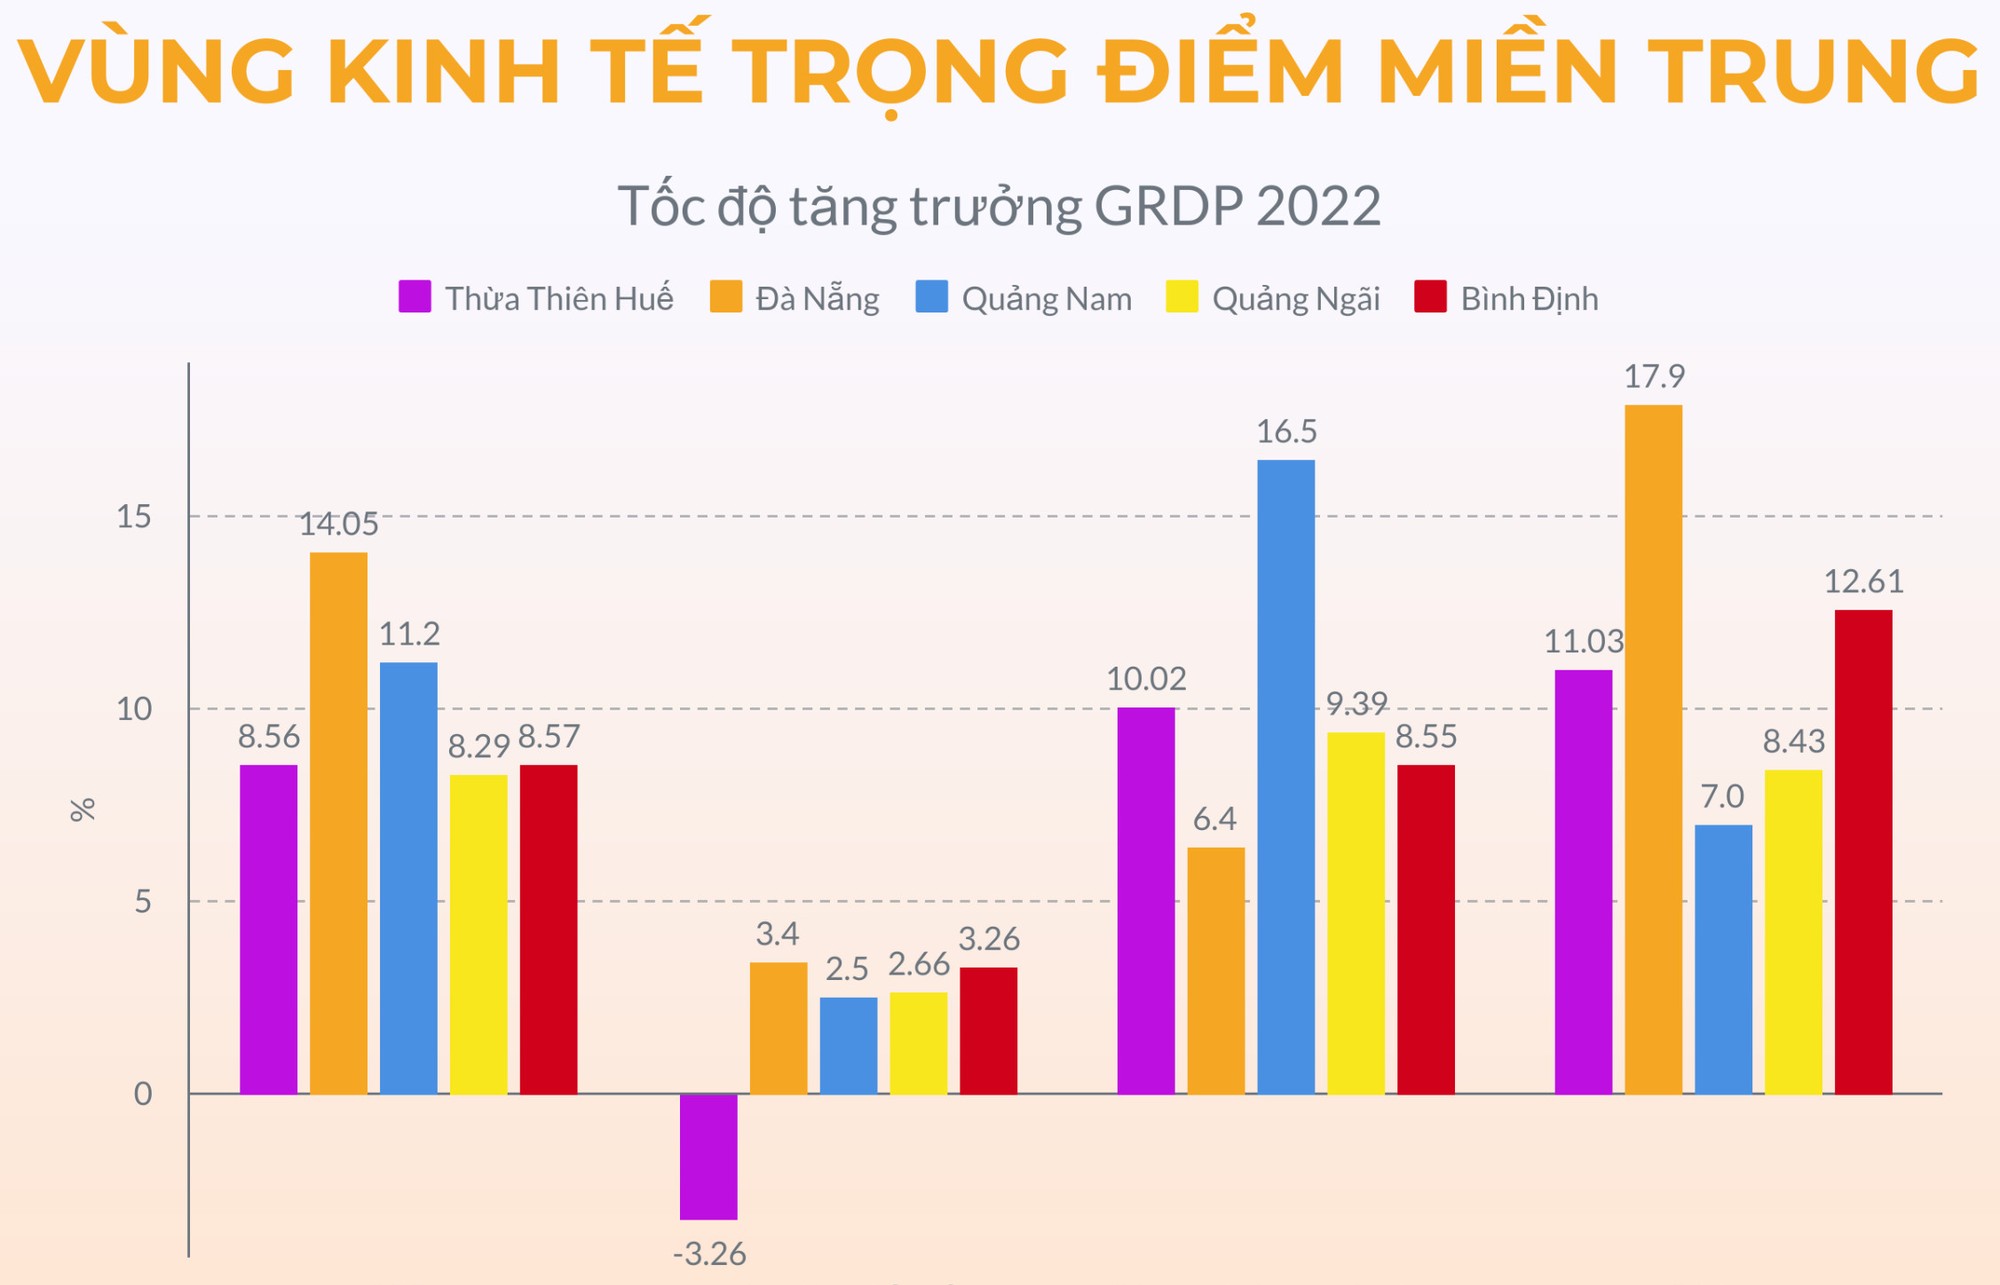 Inforgraphic: Tăng trưởng kinh tế năm 2022 Vùng Kinh tế trọng điểm miền Trung